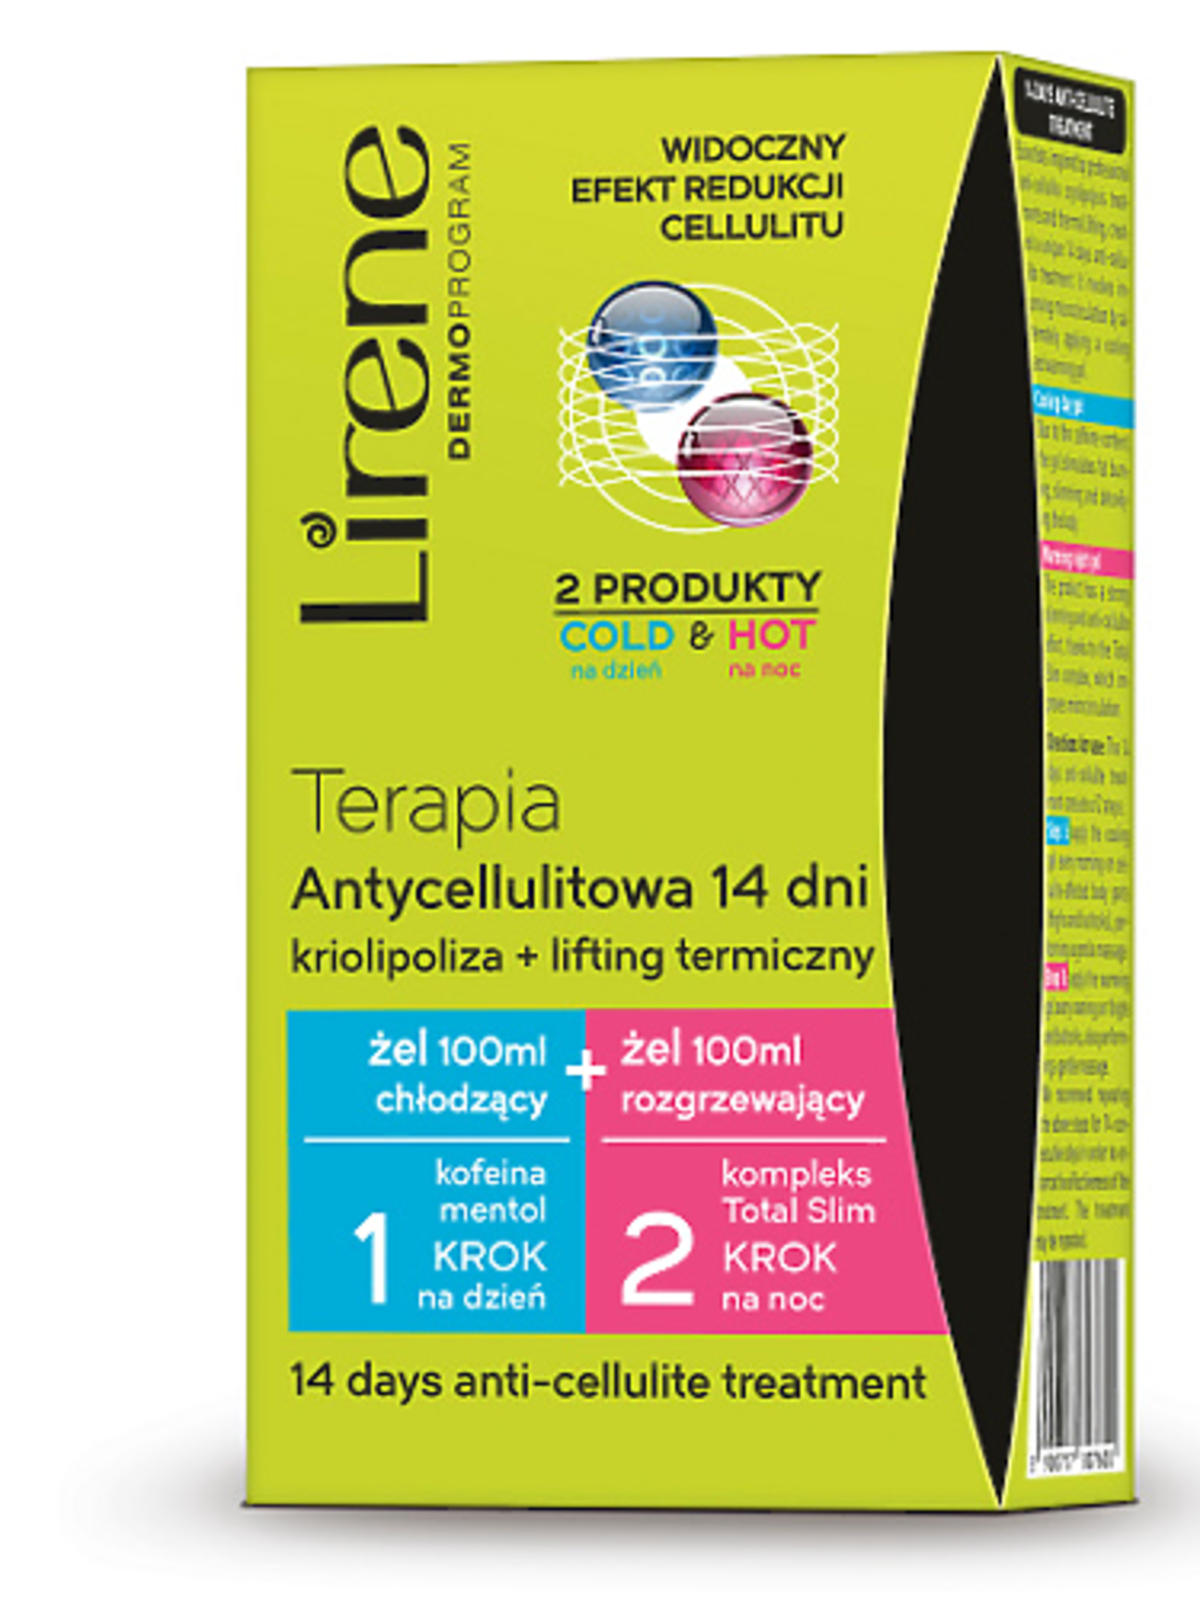 Terapia antycellulitowa 14 dni - domowa kriolipoliza + lifting termiczny Lirene, 29,99zł